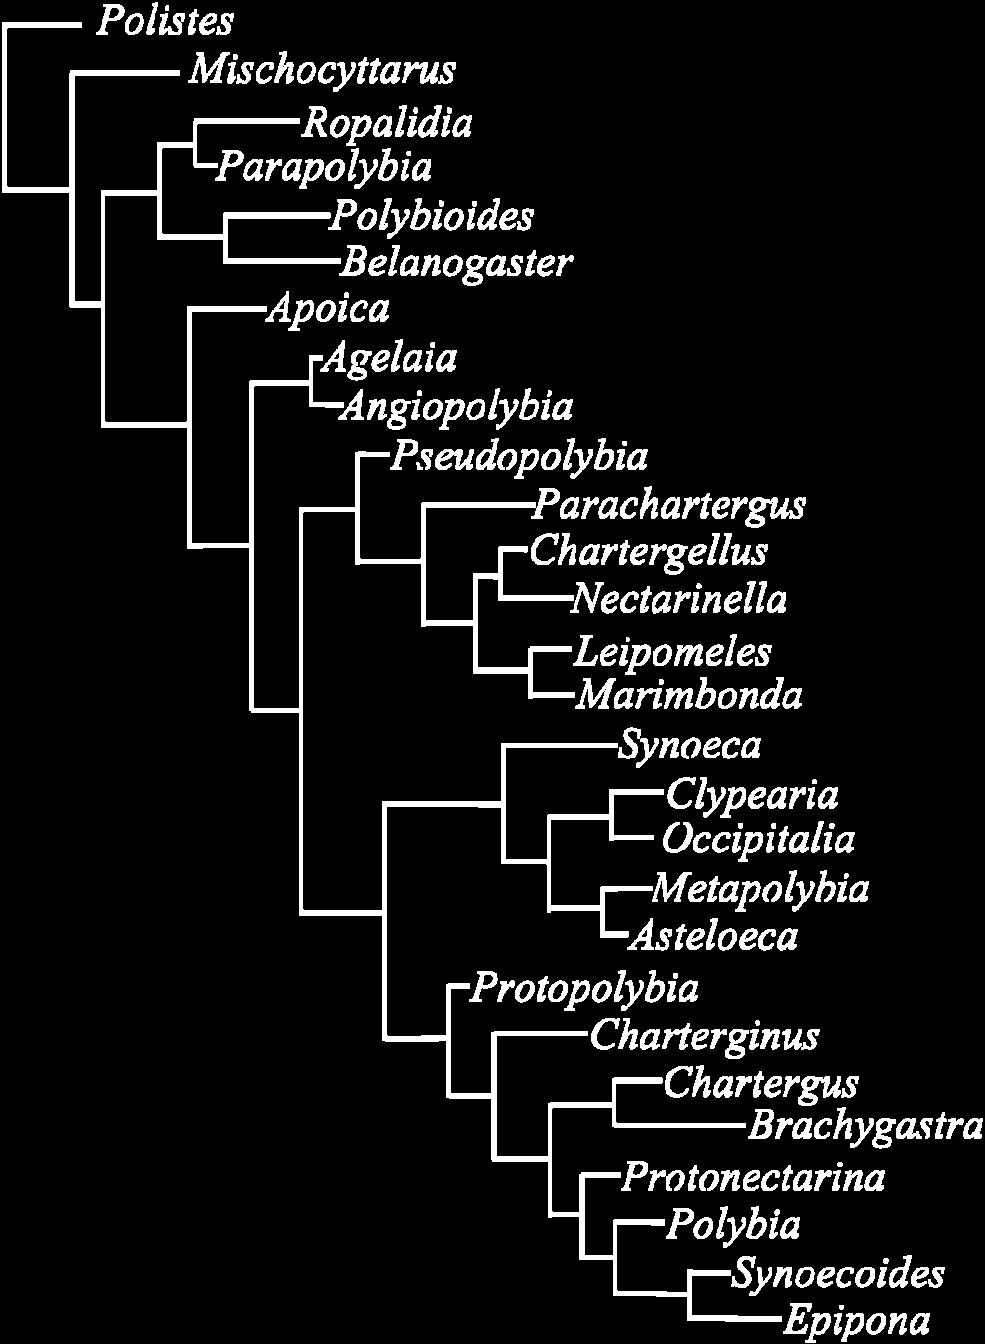 filogenia dos Polistinae